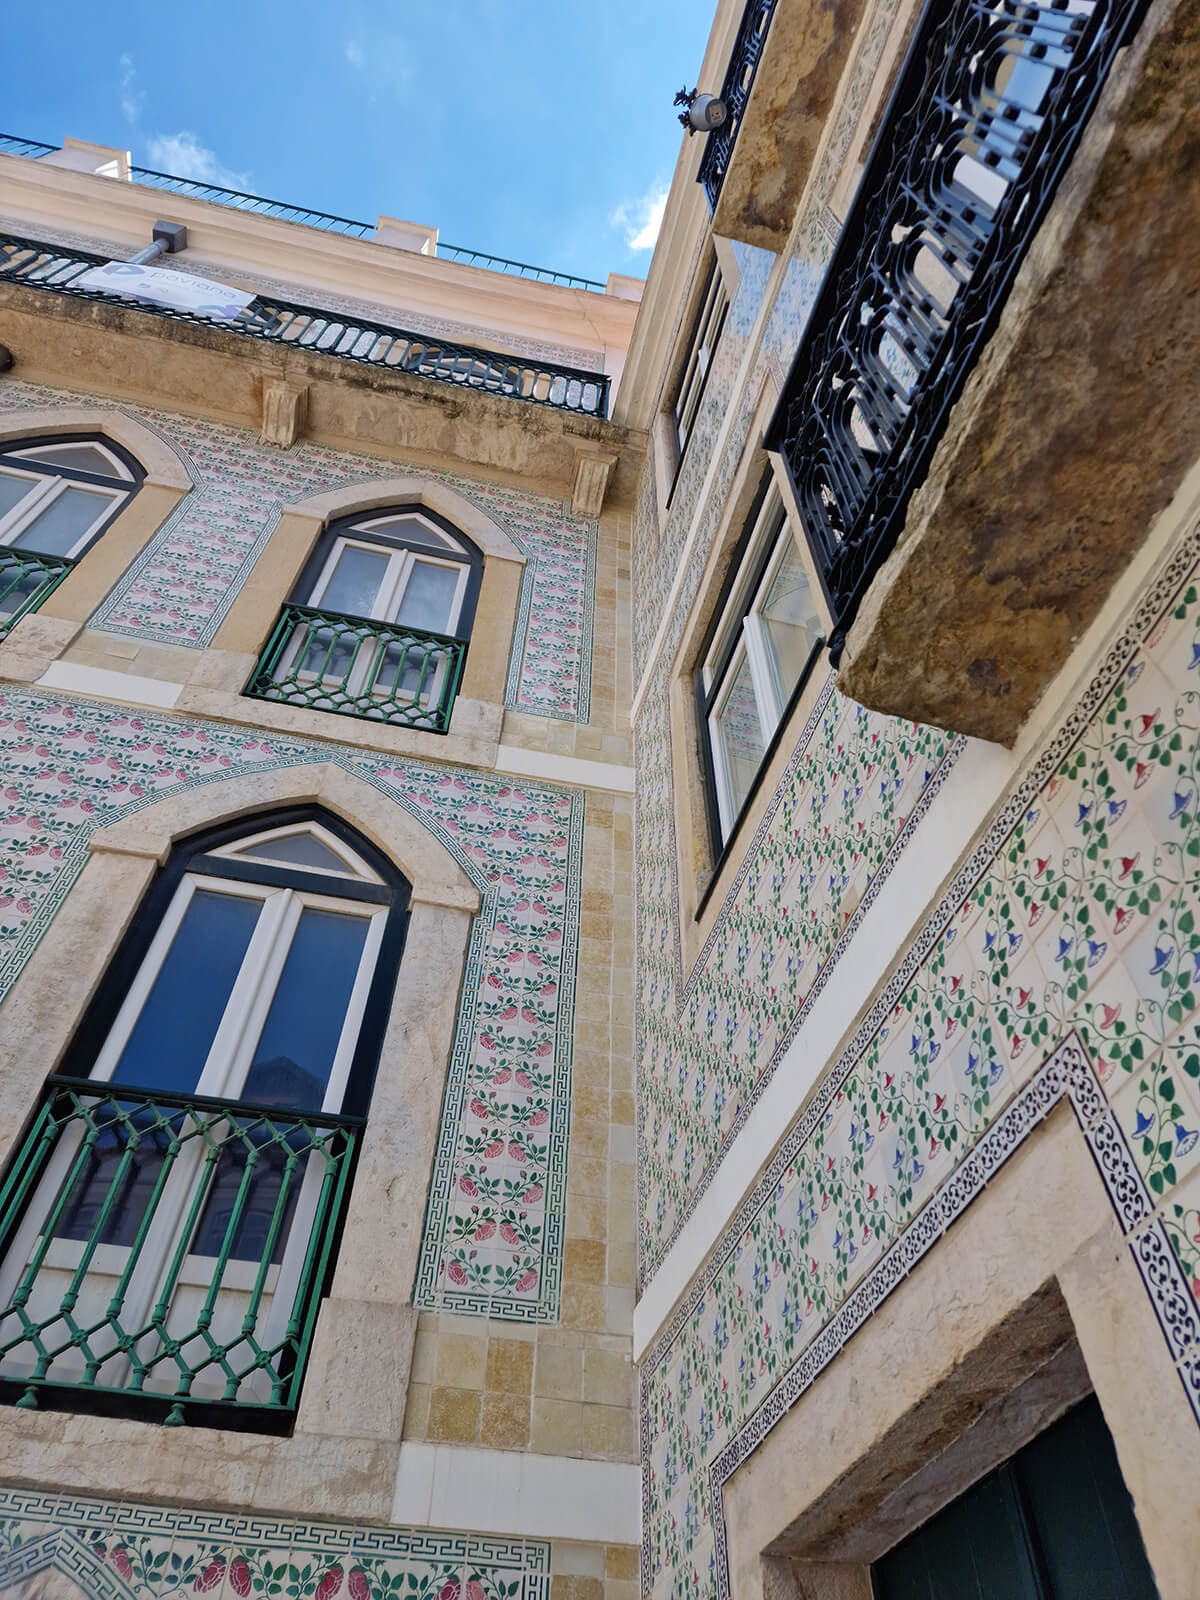 20230727 150027 - L’azulejo, le trésor décoratif du Portugal